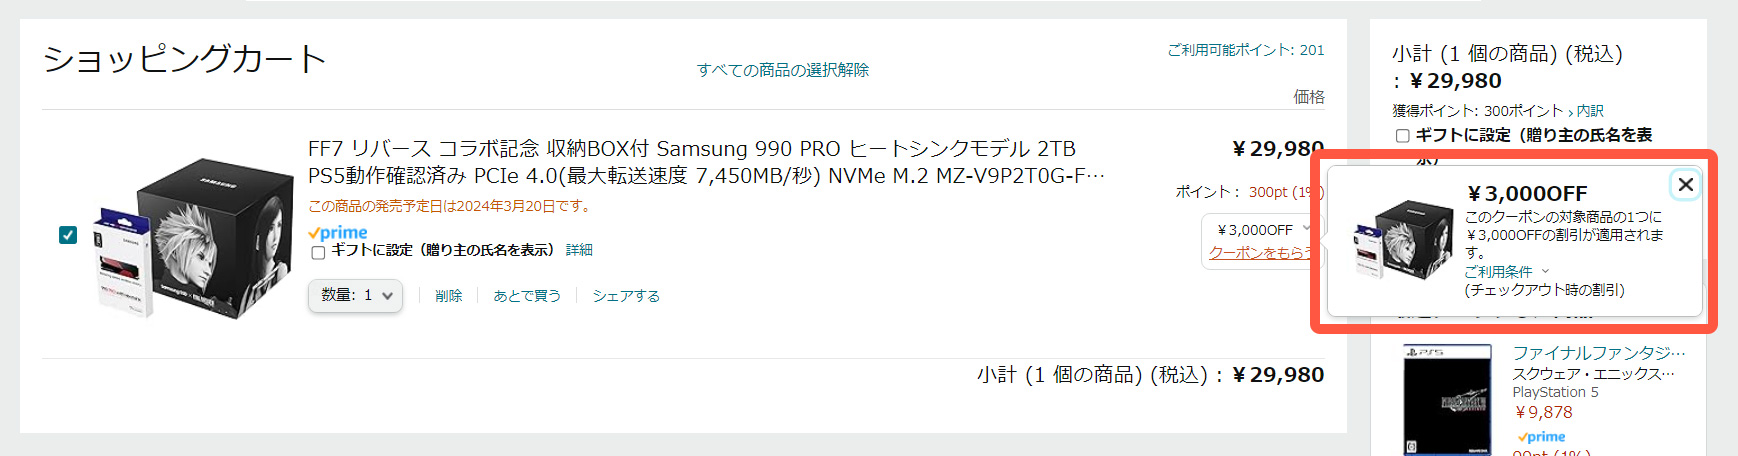 『Samsung 990 PRO ヒートシンクモデル 2TB』のFFVIIリバースコラボモデル